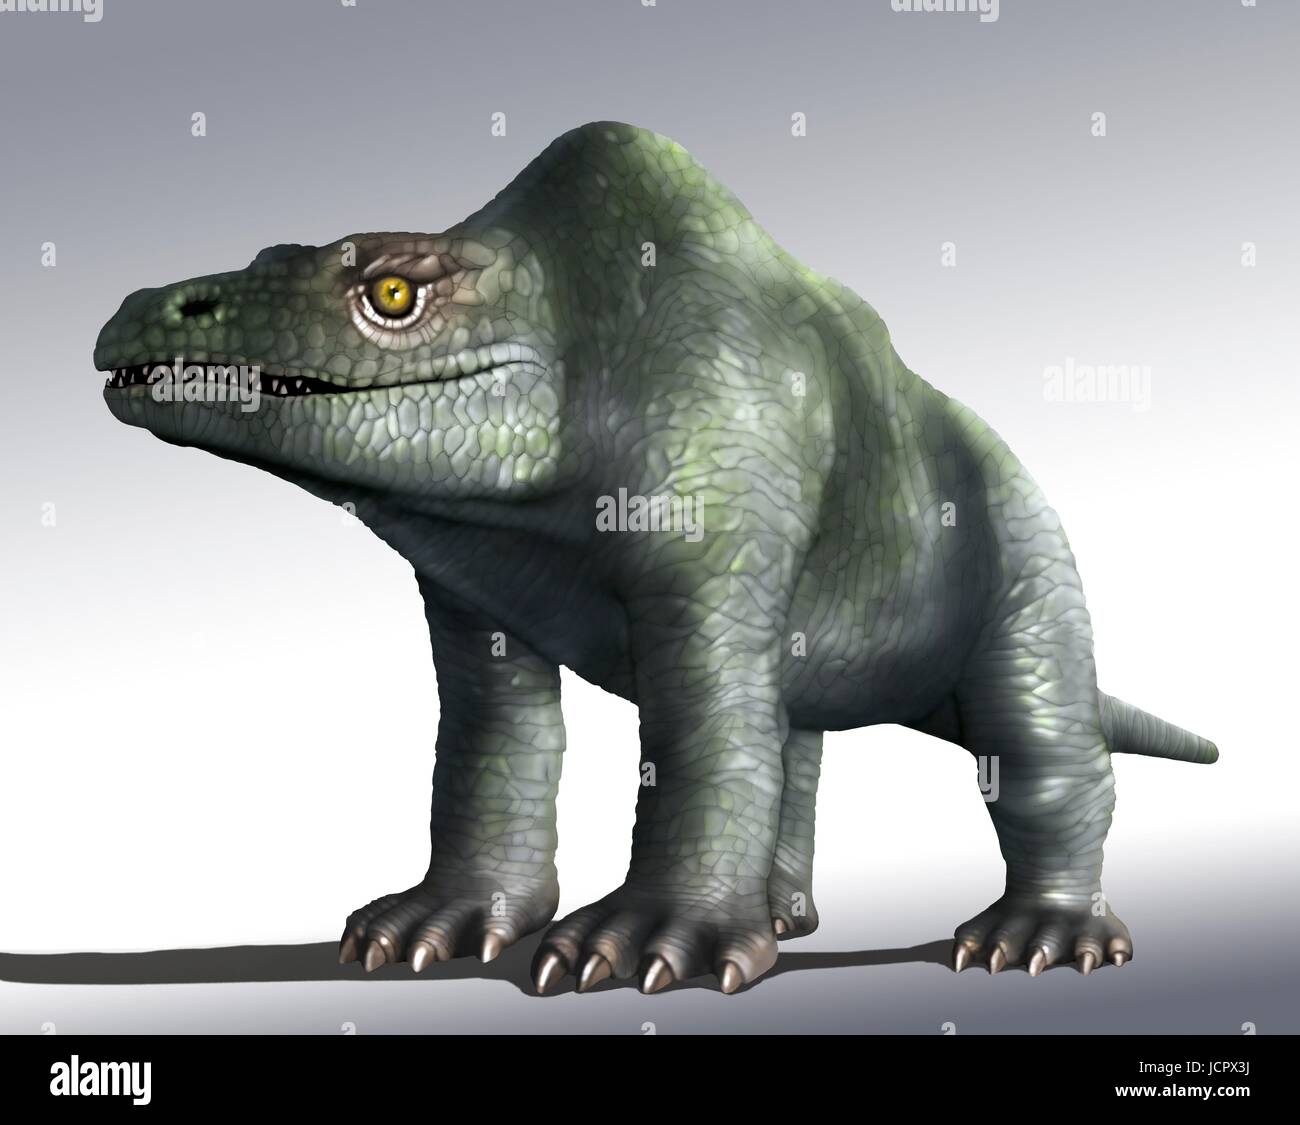 Megalosaurus ist Gattung ausgestorbener Fleisch fressenden Dinosaurier, Theropoden, vom mittleren Jura Periode in der Geschichte der Erde, 166 Millionen Jahre her. Es lebte in der nun südlichen England.die ersten Dinosaurier Fossil jemals gefunden, längst 1676, wahrscheinlich Fragment Oberschenkelknochen war, die Megalosaurus.This gehörte, Tier war mittlere Theropode, 6 bis 7 m lang mit einem Gewicht von etwa einer Tonne. Die folgende Abbildung zeigt Tier, wie es ursprünglich vorgestellt wurde, im 19. Jahrhundert zu erscheinen. Das Bild ist auf der Grundlage berühmten Statuen Tier im Londoner Crystal Palace Park.We wissen jetzt, dass es zwei Beine wie anderen Theropoden ging. Stockfoto